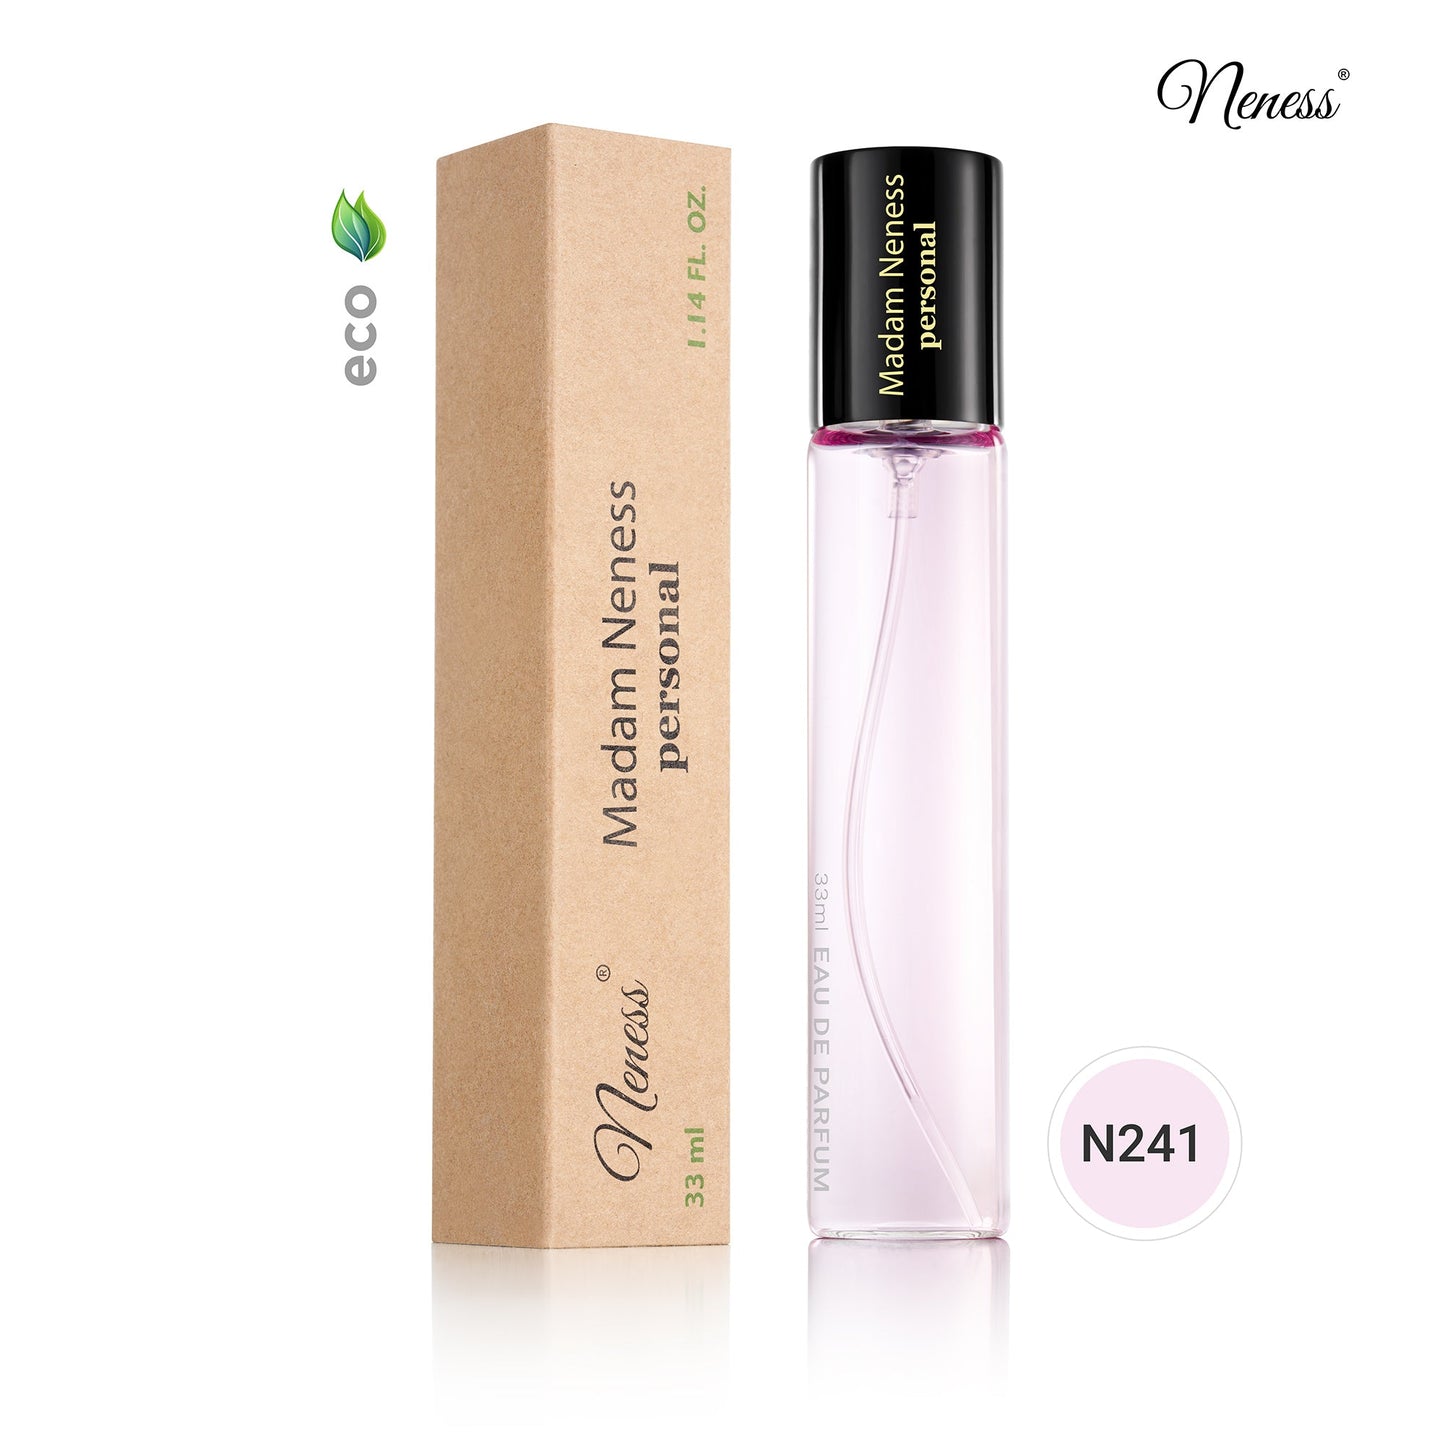 N241. Neness Madam Neness Personal - 33 ml - Parfum voor vrouwen